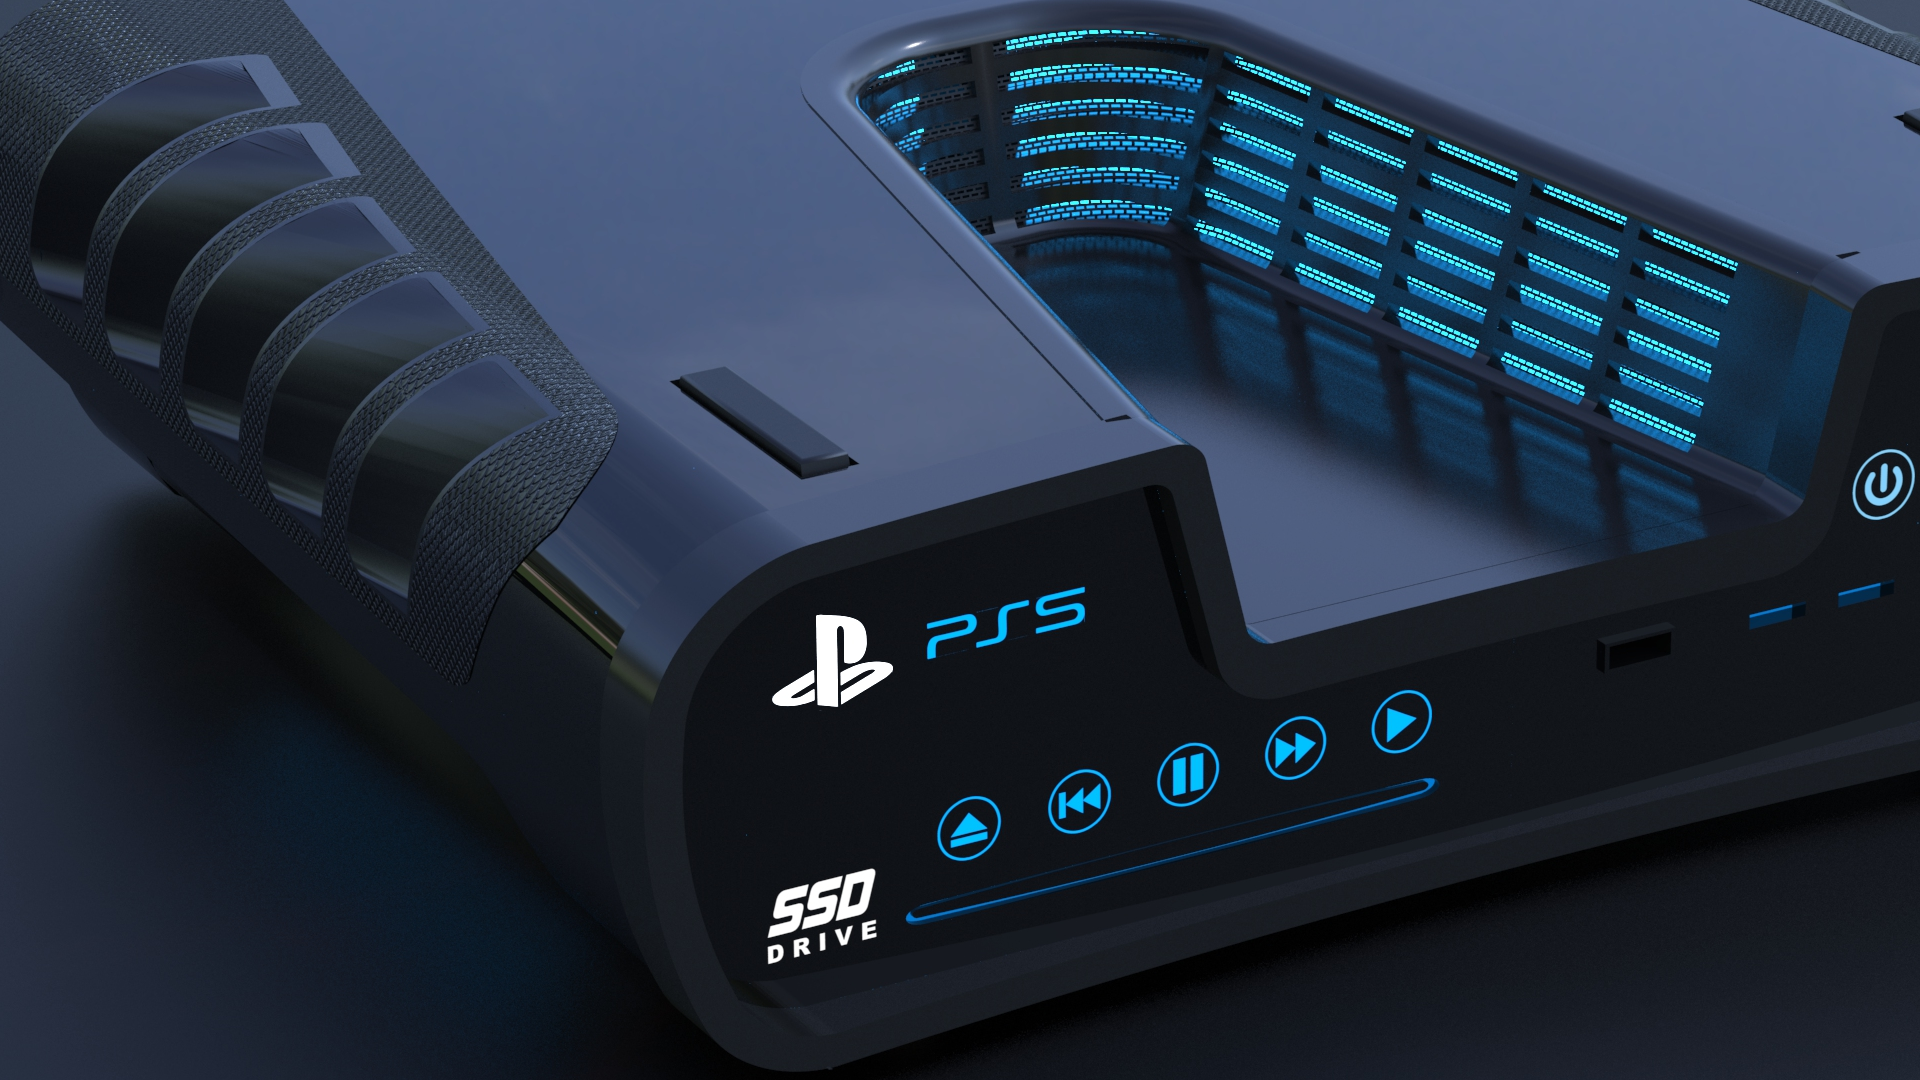 Studios might already have PS5 Pro dev kits